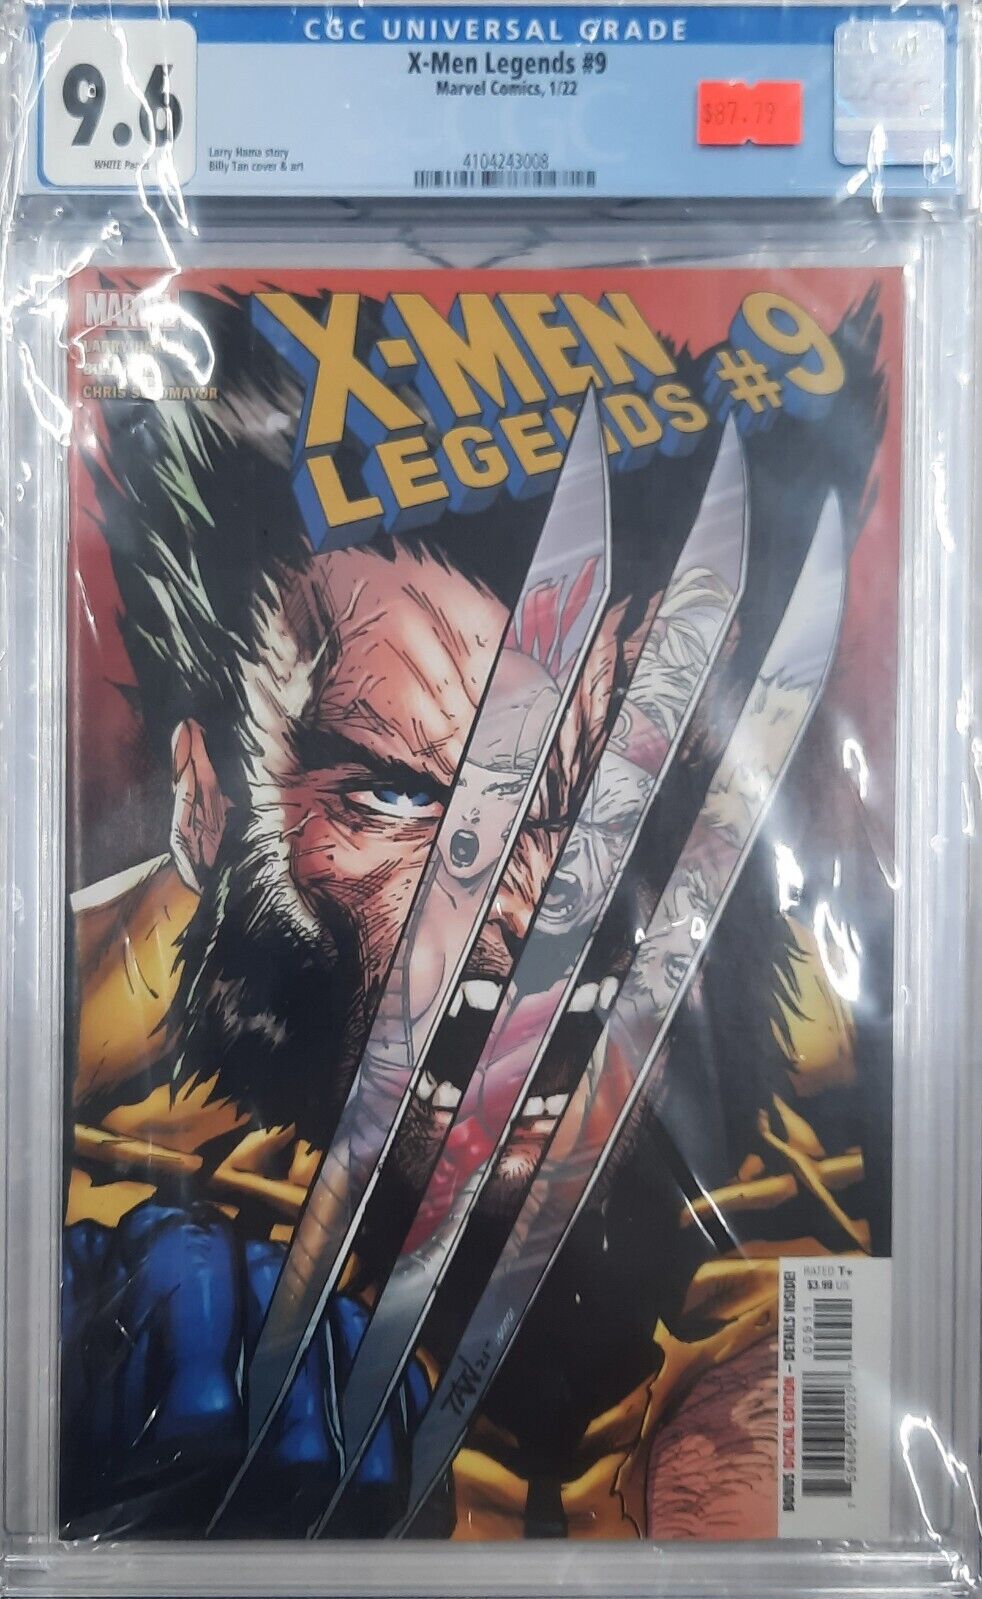 CGC 9.6 X-Men Legends #9 Marvel Comics, 1/22